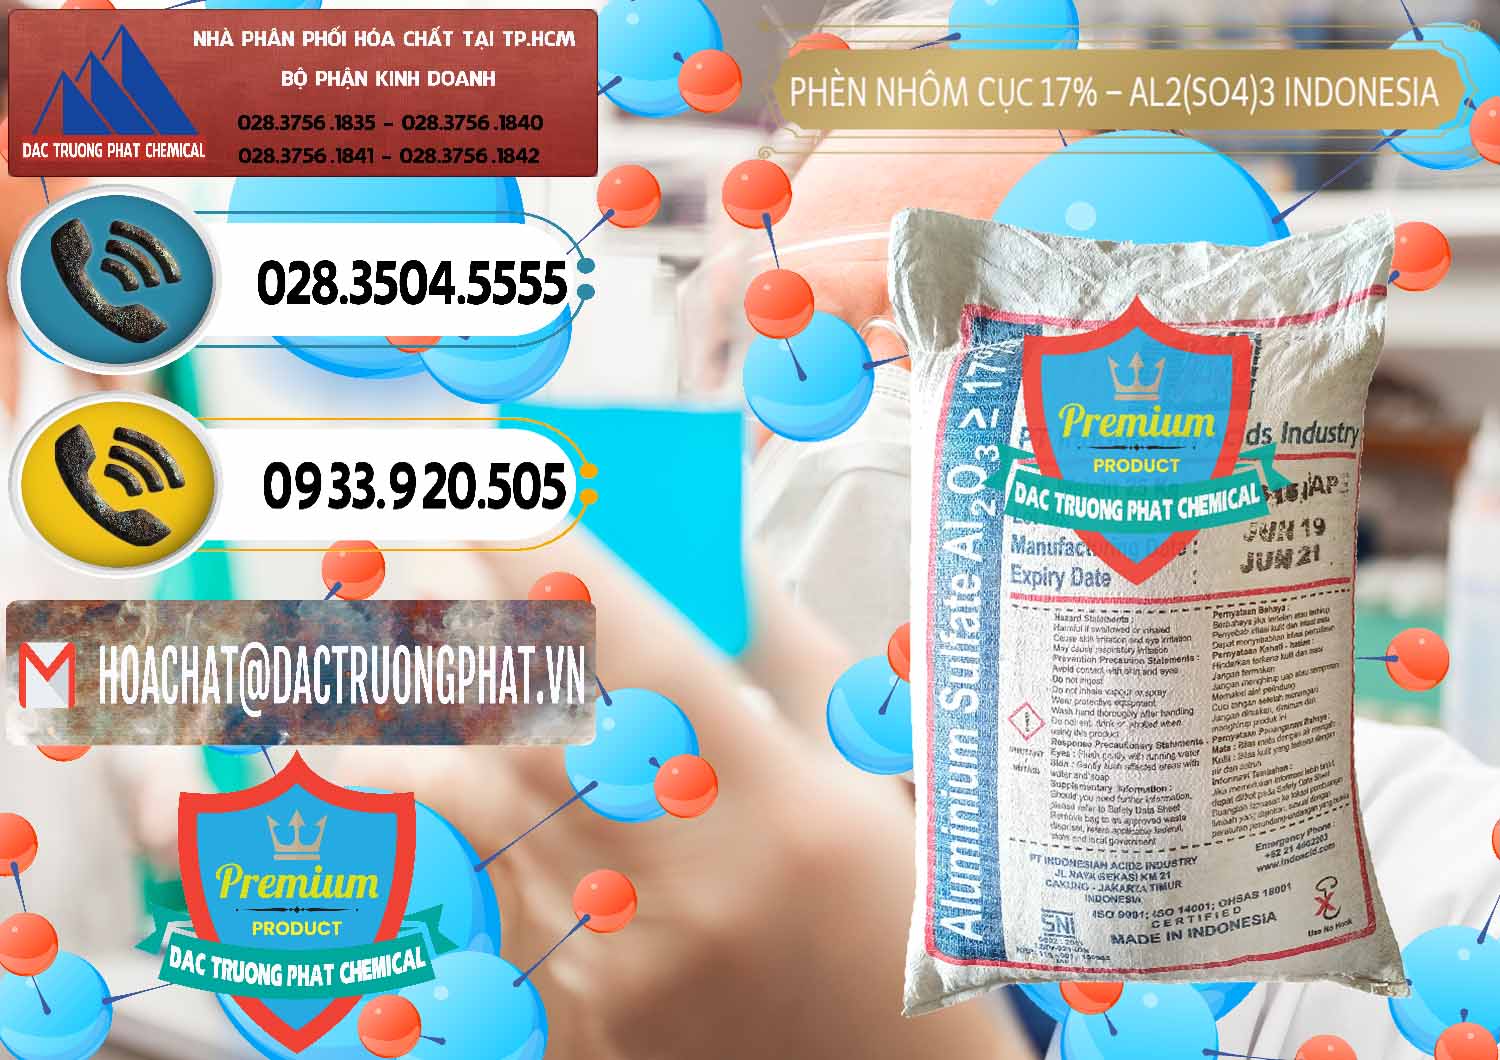 Nơi chuyên phân phối & bán Phèn Nhôm Cục - Al2(SO4)3 17% bao 25kg Indonesia - 0115 - Chuyên cung cấp _ kinh doanh hóa chất tại TP.HCM - hoachatdetnhuom.vn